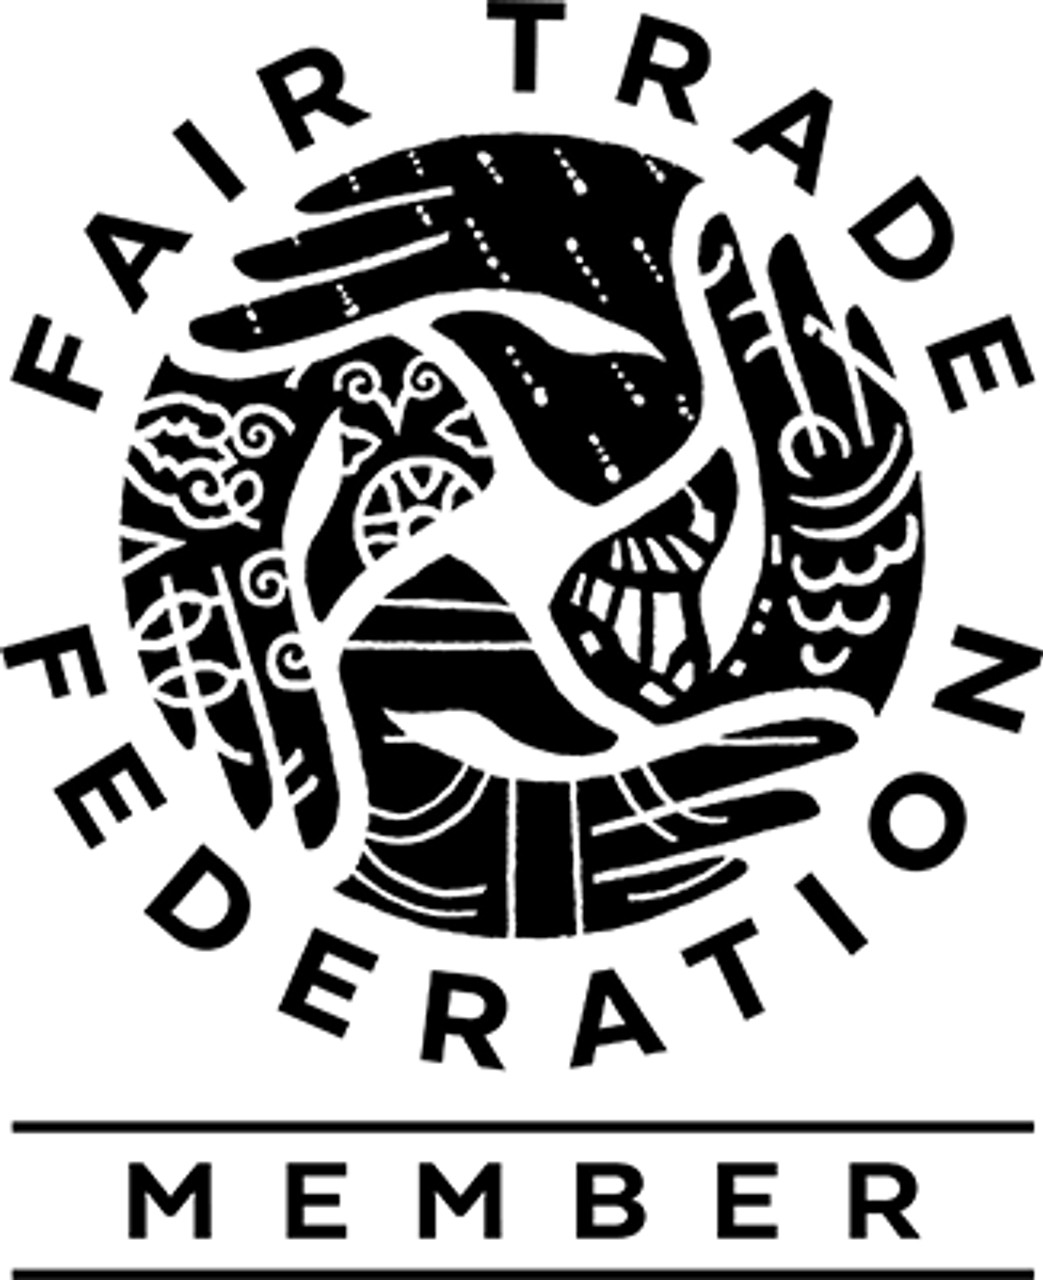 Metal Fair Trade, Fair Trade Federation, Fair Trade Art, Haiti Fair Trade, Fair Trade Federation Member, 